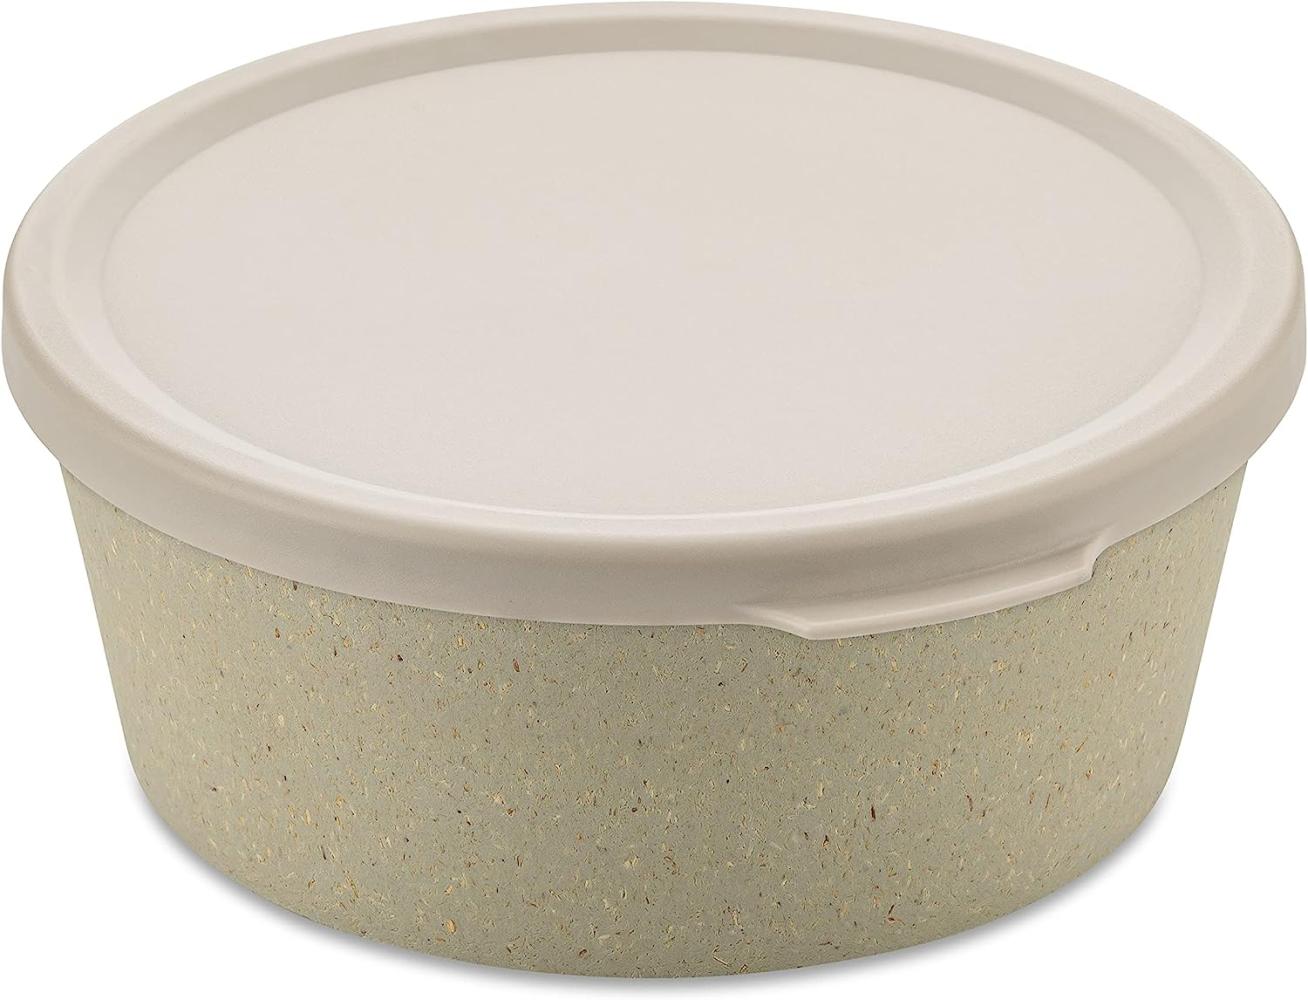 Koziol Schale Connect Bowl Mit Deckel, Schüssel, Kunststoff-Holz-Mix, Nature Desert Sand, 890 ml, 7271700 Bild 1